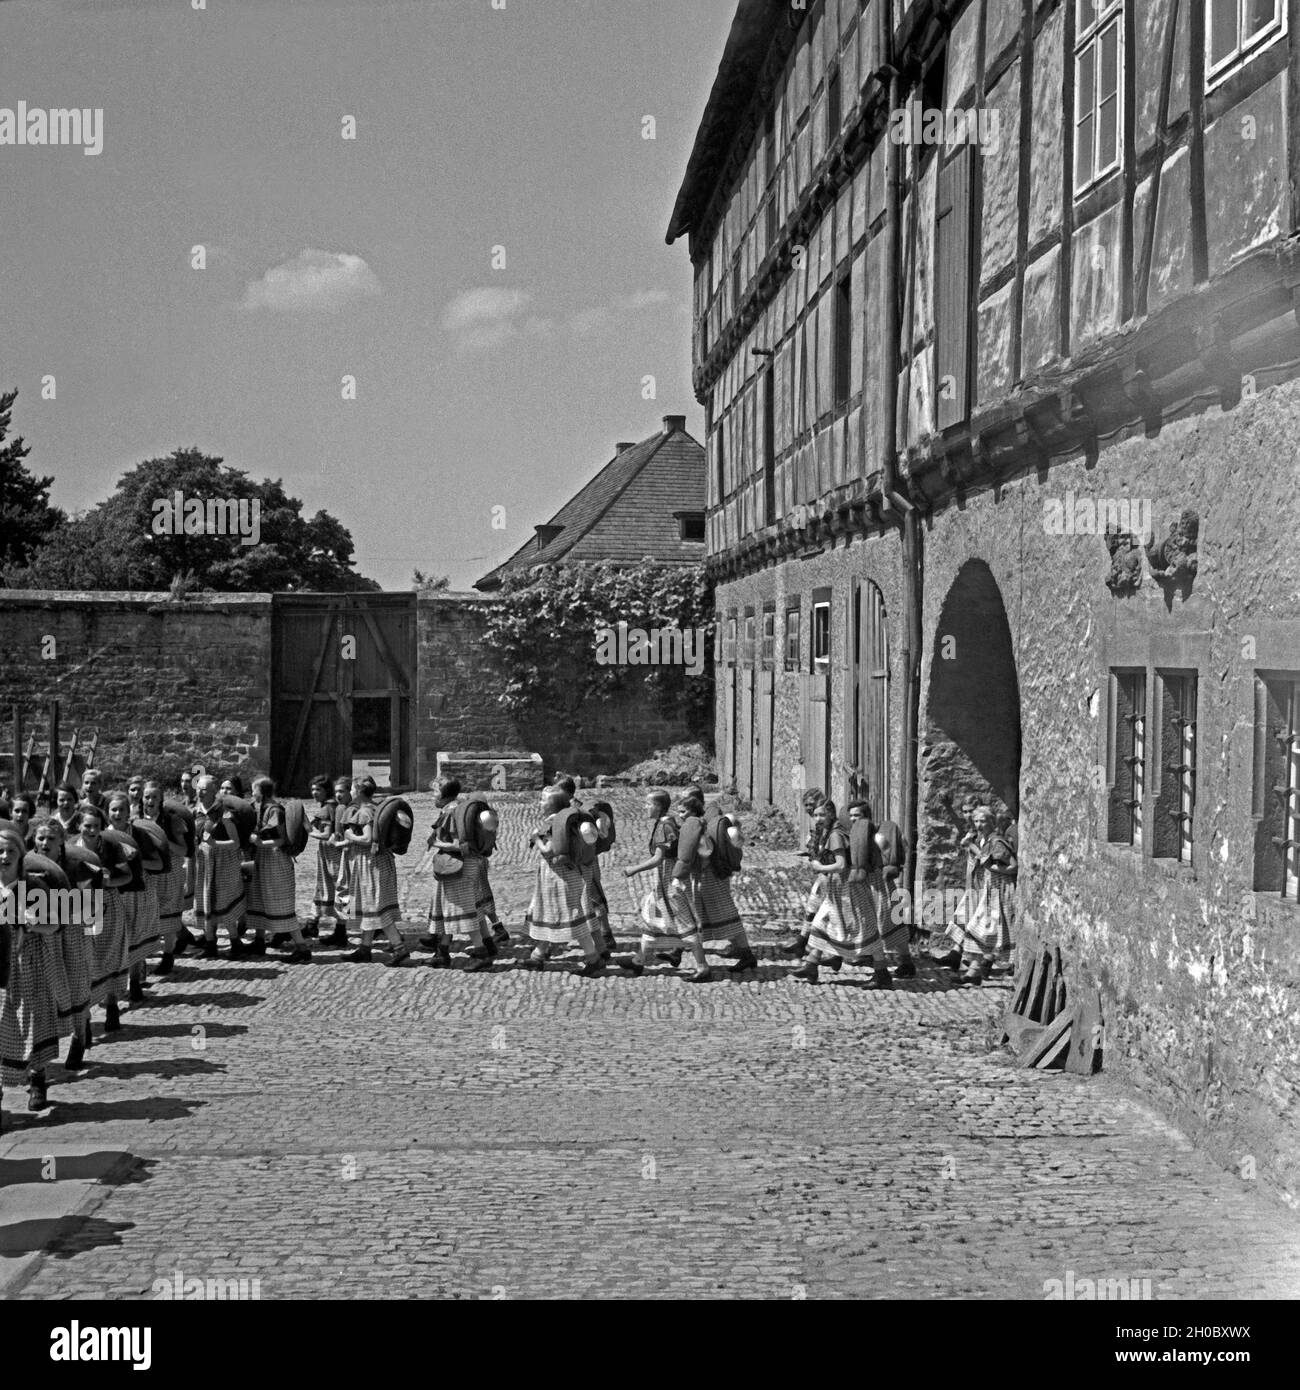 BdM Mädel beim Ausmarsch aus dem Landjahr Lager in Polle an der Weser, Deutschland 1930er Jahre. BdM girls marching out of their camp at Polle, Germany 1930s. Stock Photo